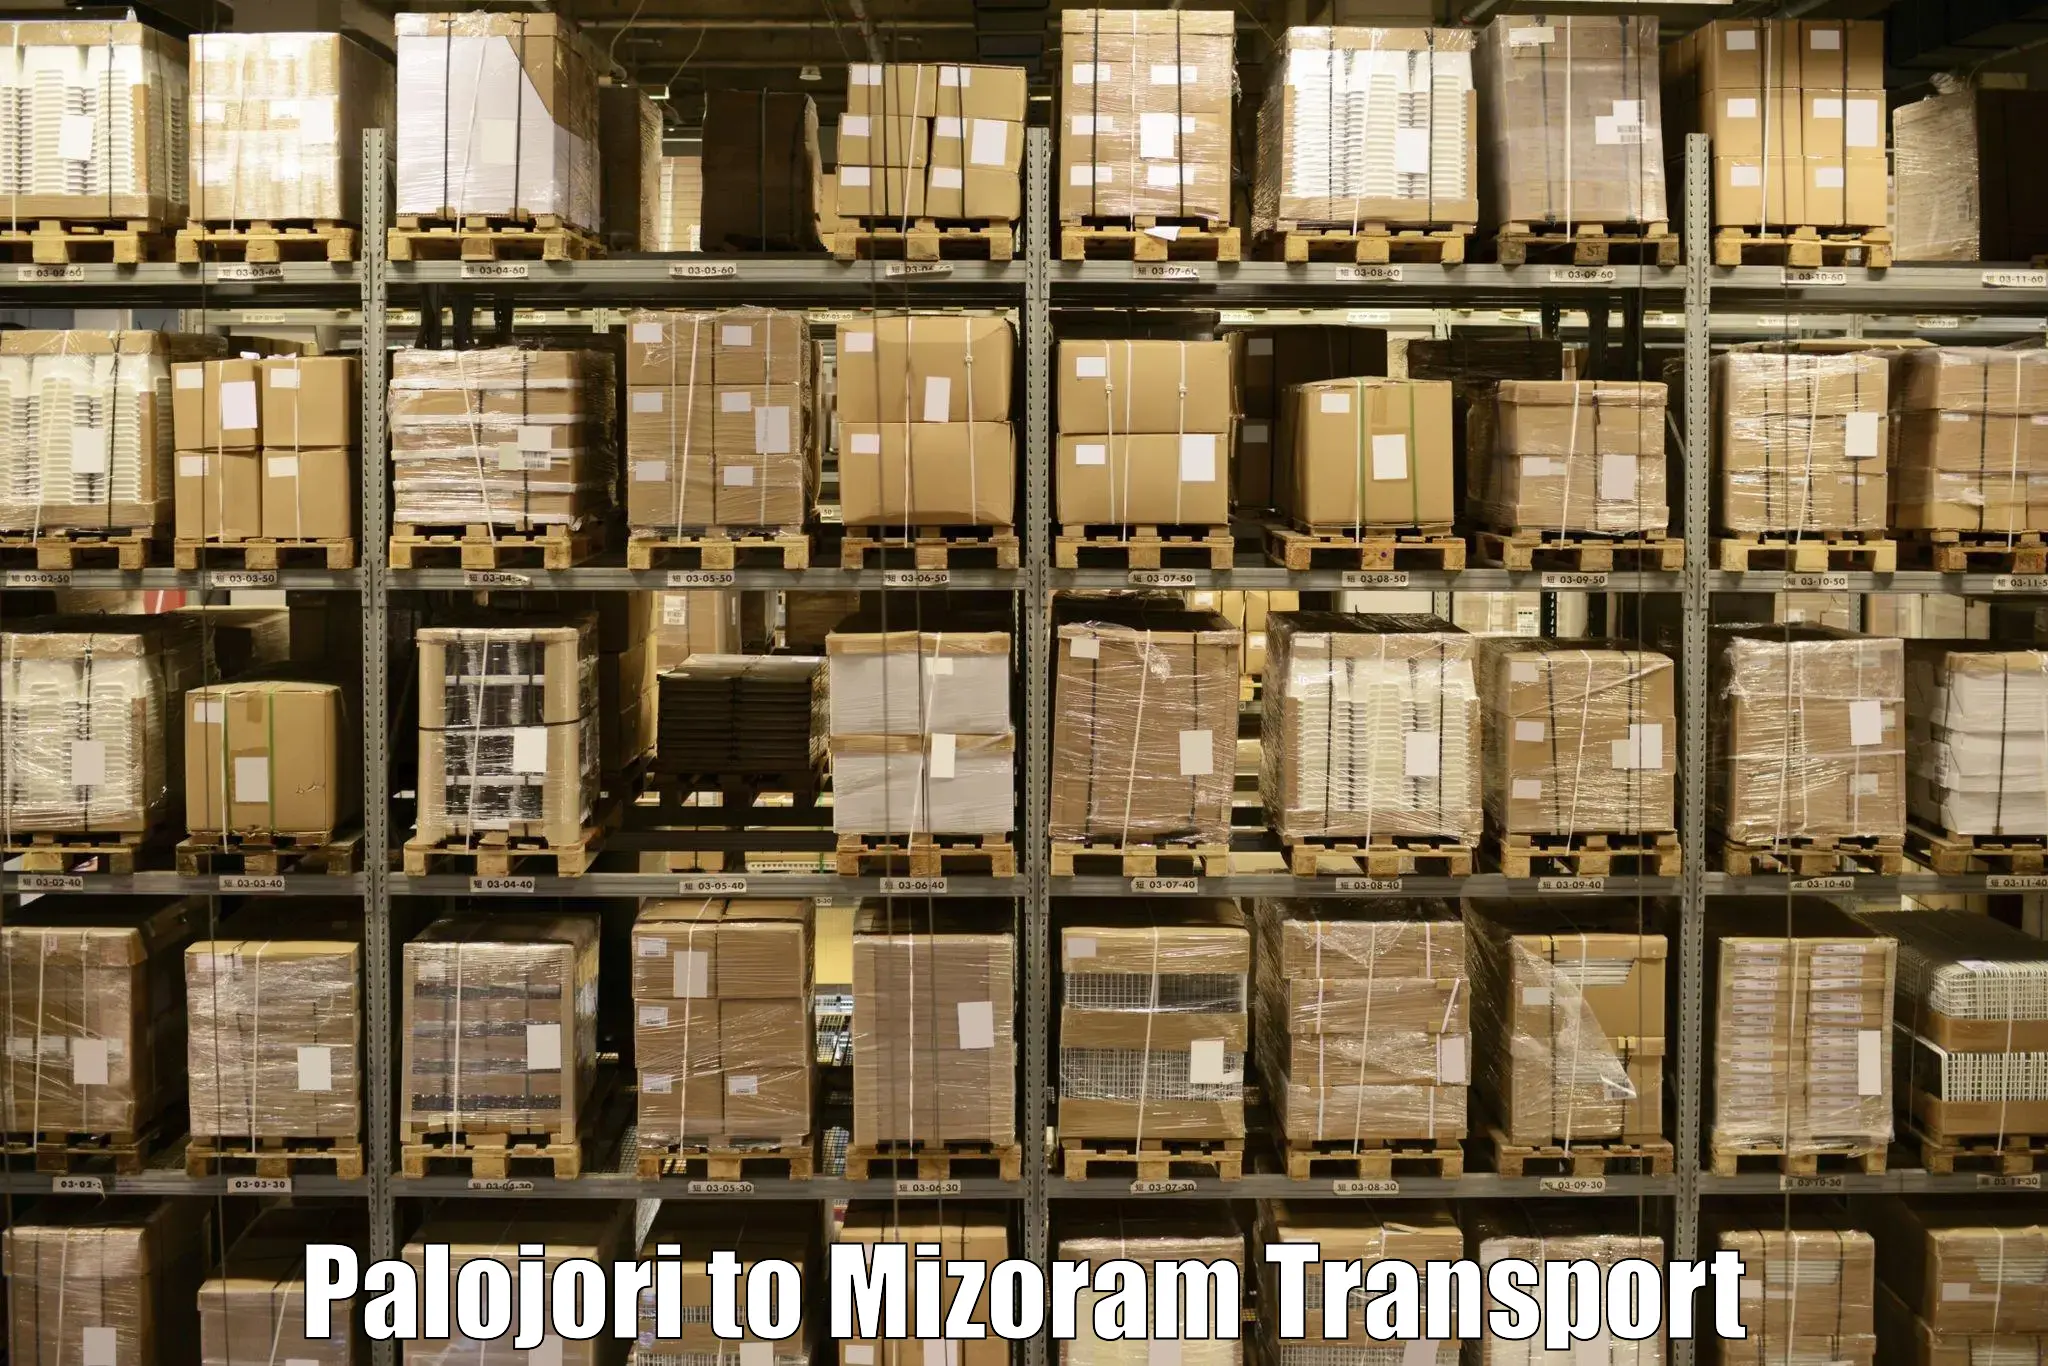 Shipping partner Palojori to NIT Aizawl